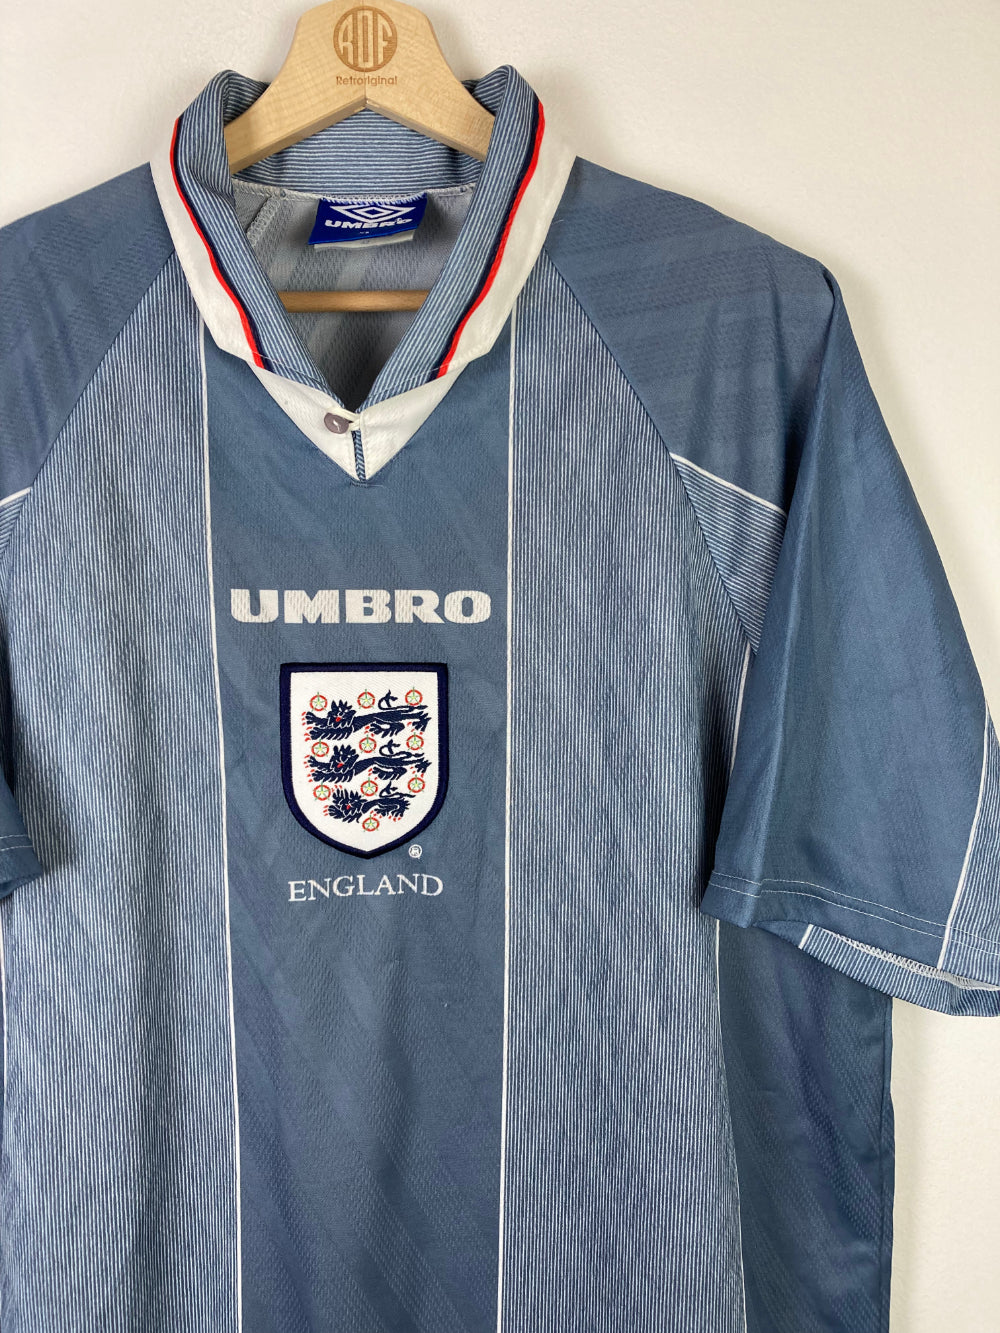 
                  
                    Original England Away Jersey 1996-1997 - XL
                  
                